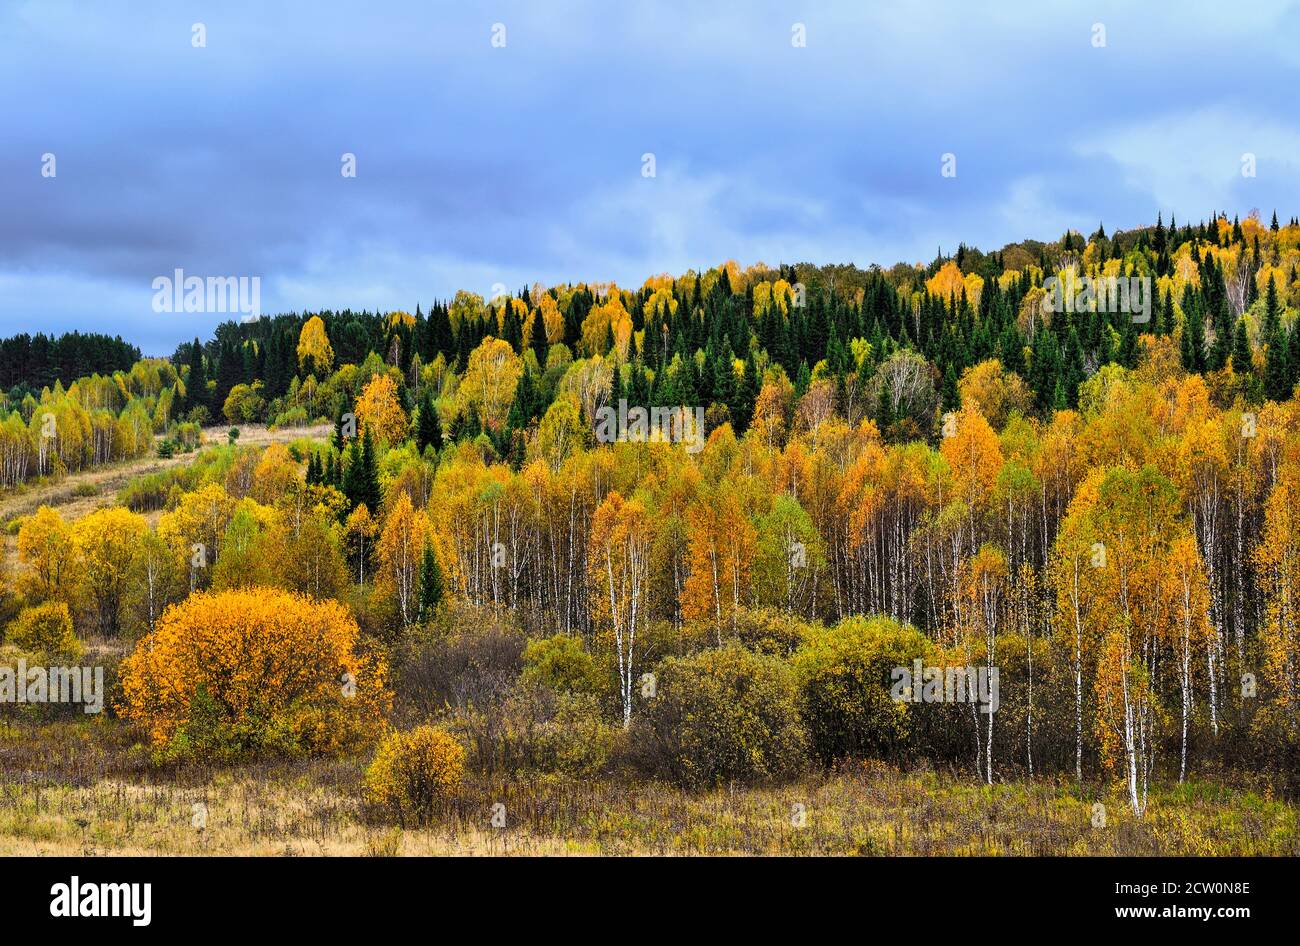 Paysage d'automne lumineux et multicolore. Forêt sur la colline dans une décoration luxueuse, doré, rouge, feuillage orange des arbres dePrès, conifères verts Banque D'Images